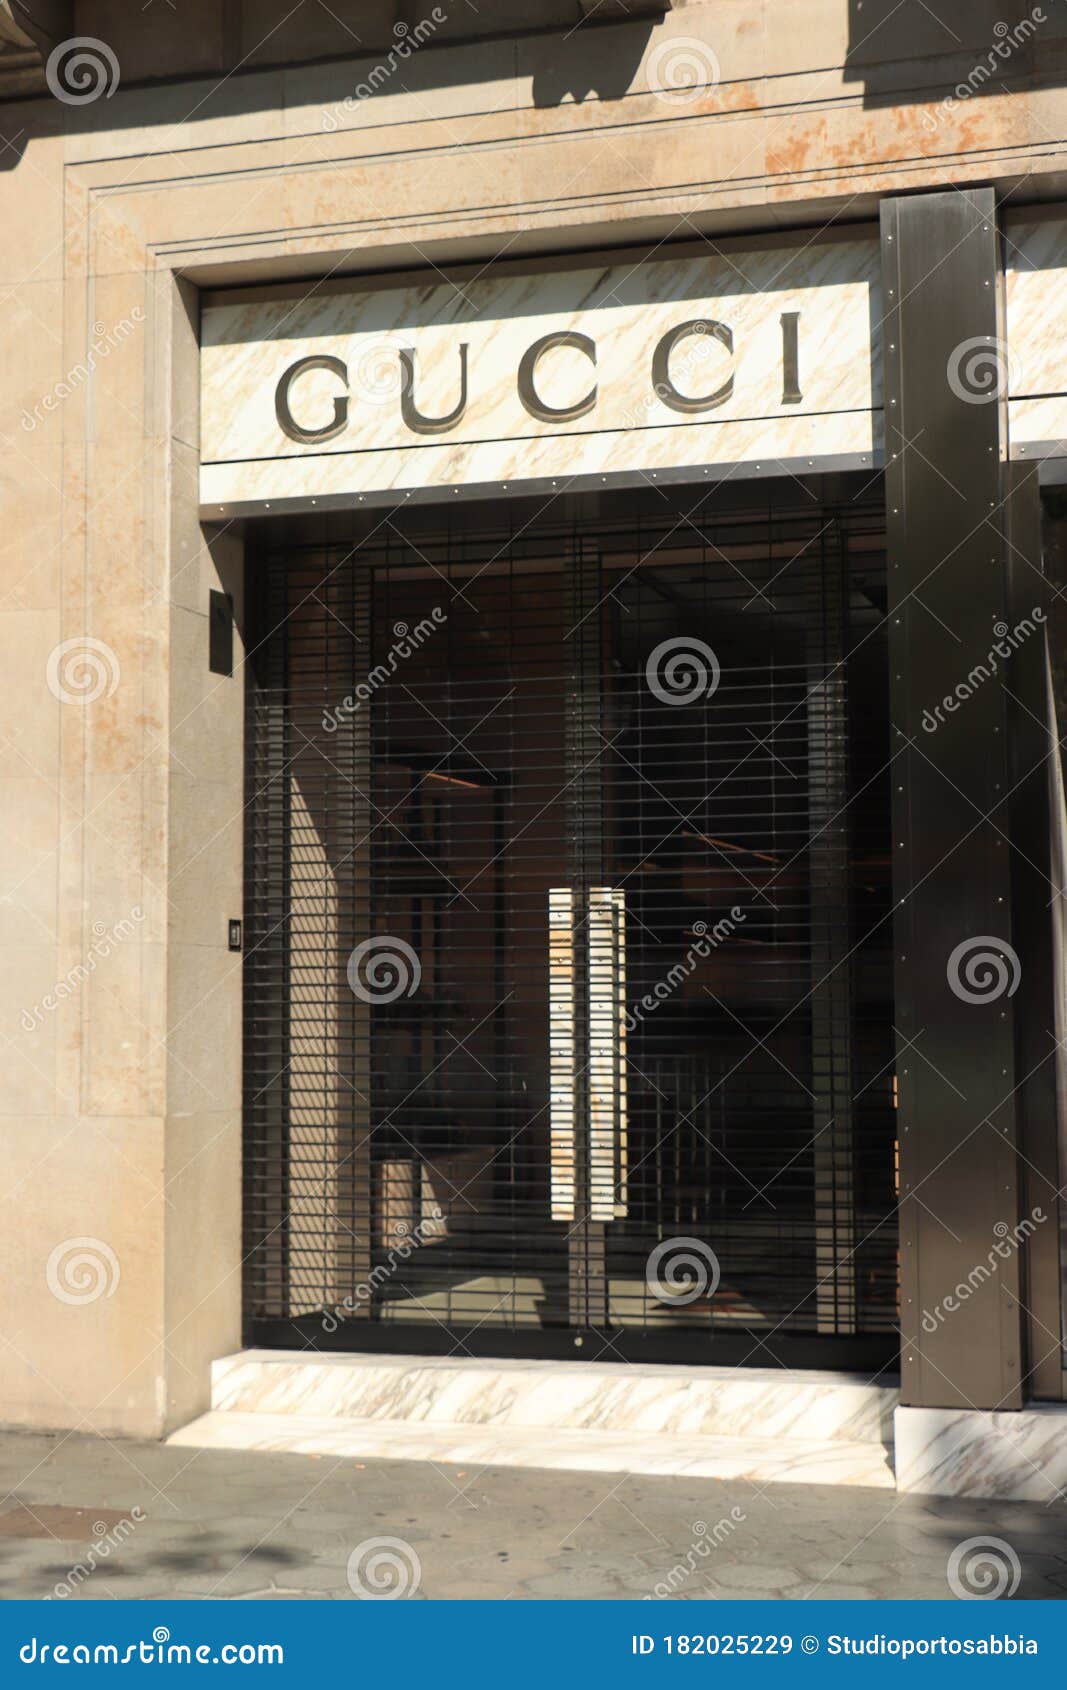 Barcelona, Spain - September 29th, 2019: Gucci Store Editorial Stock Image Image of city, jugendstil: 182025229